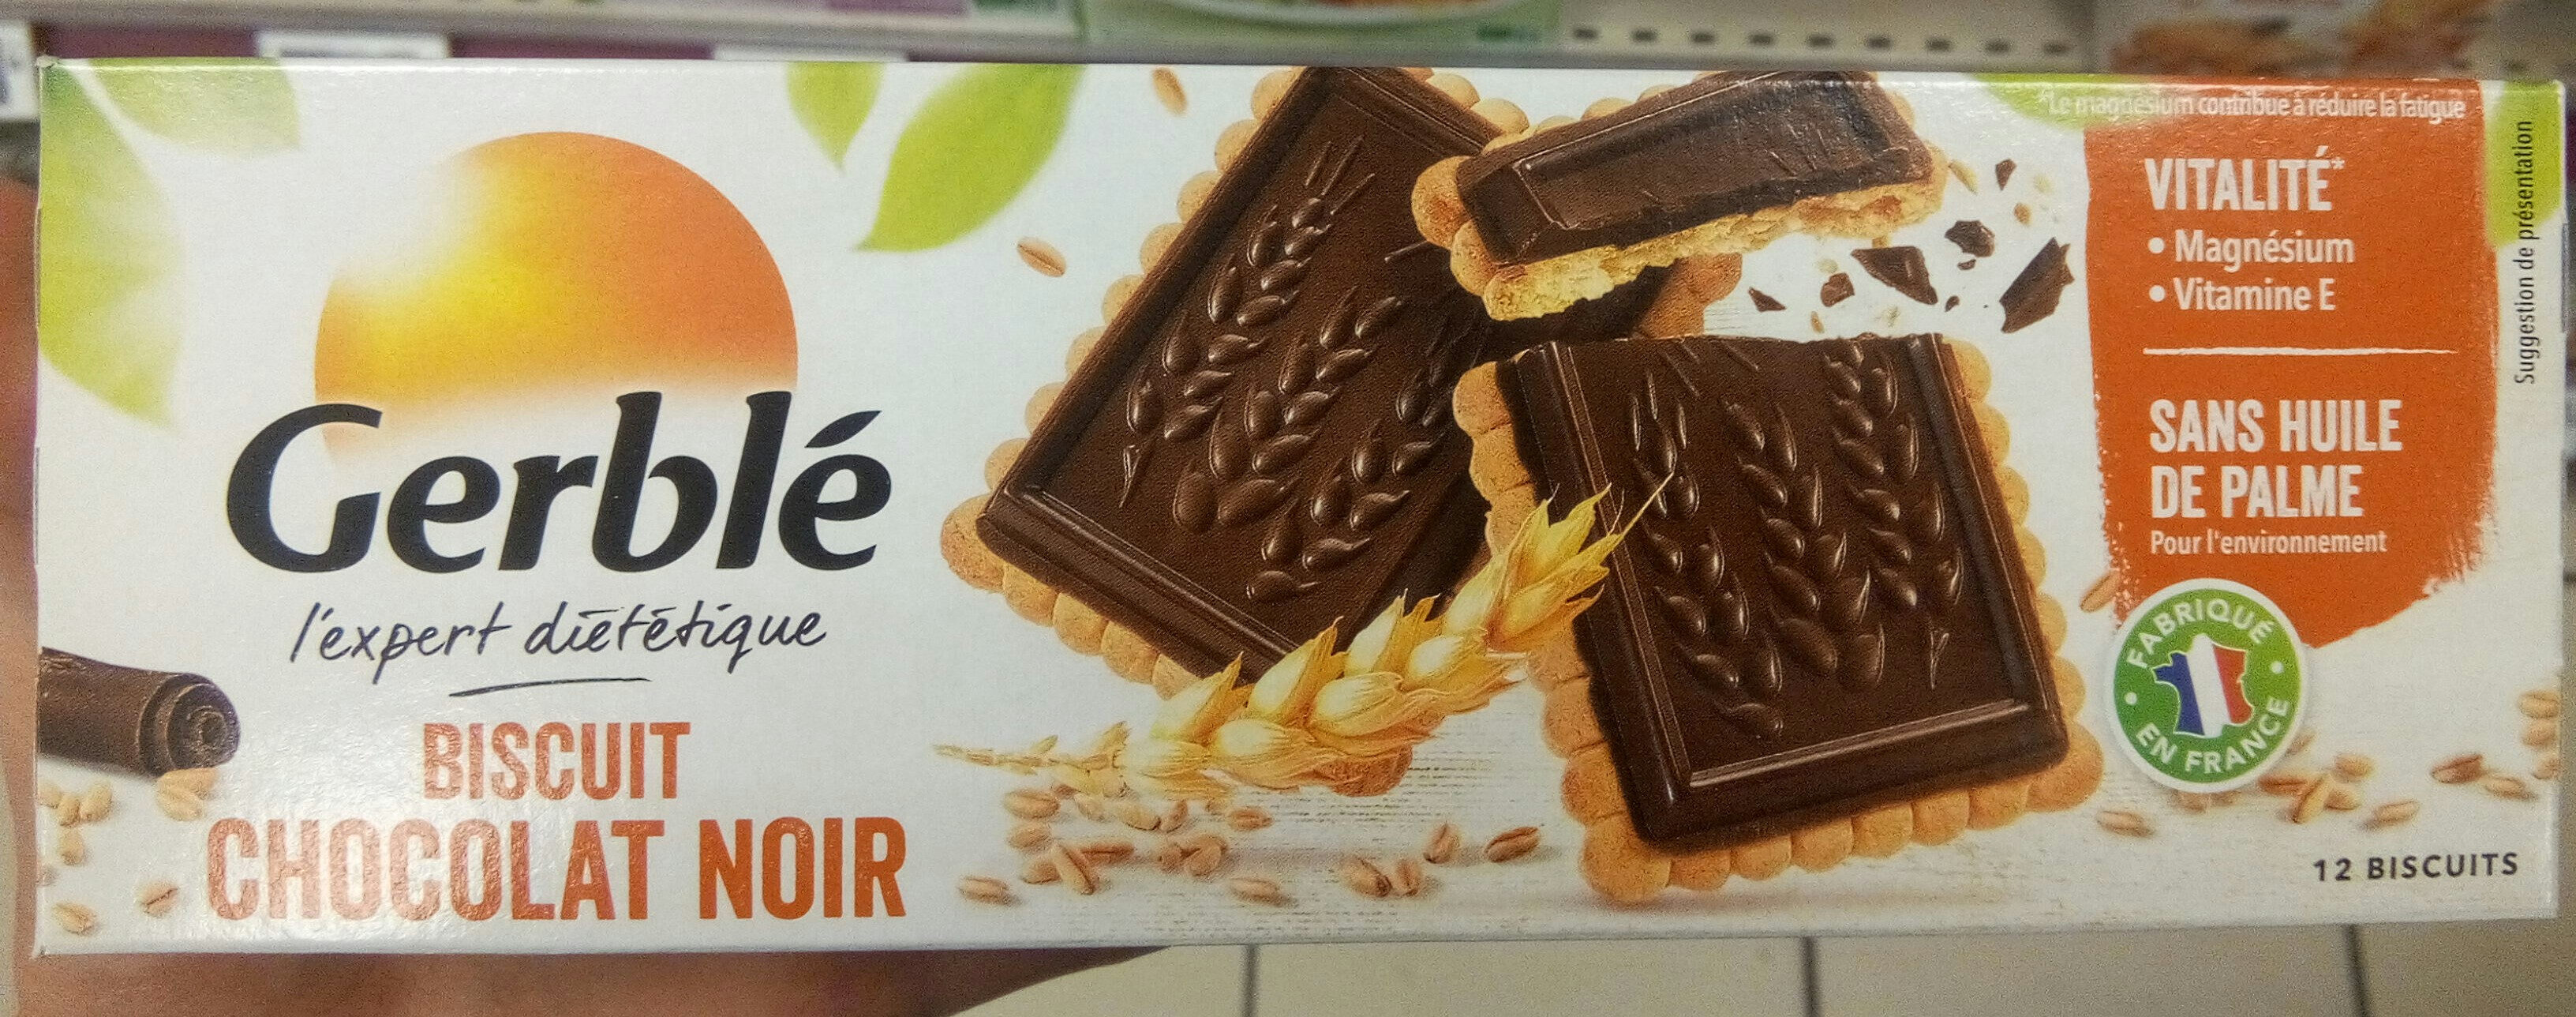 Biscuit Chocolat noir - Produit